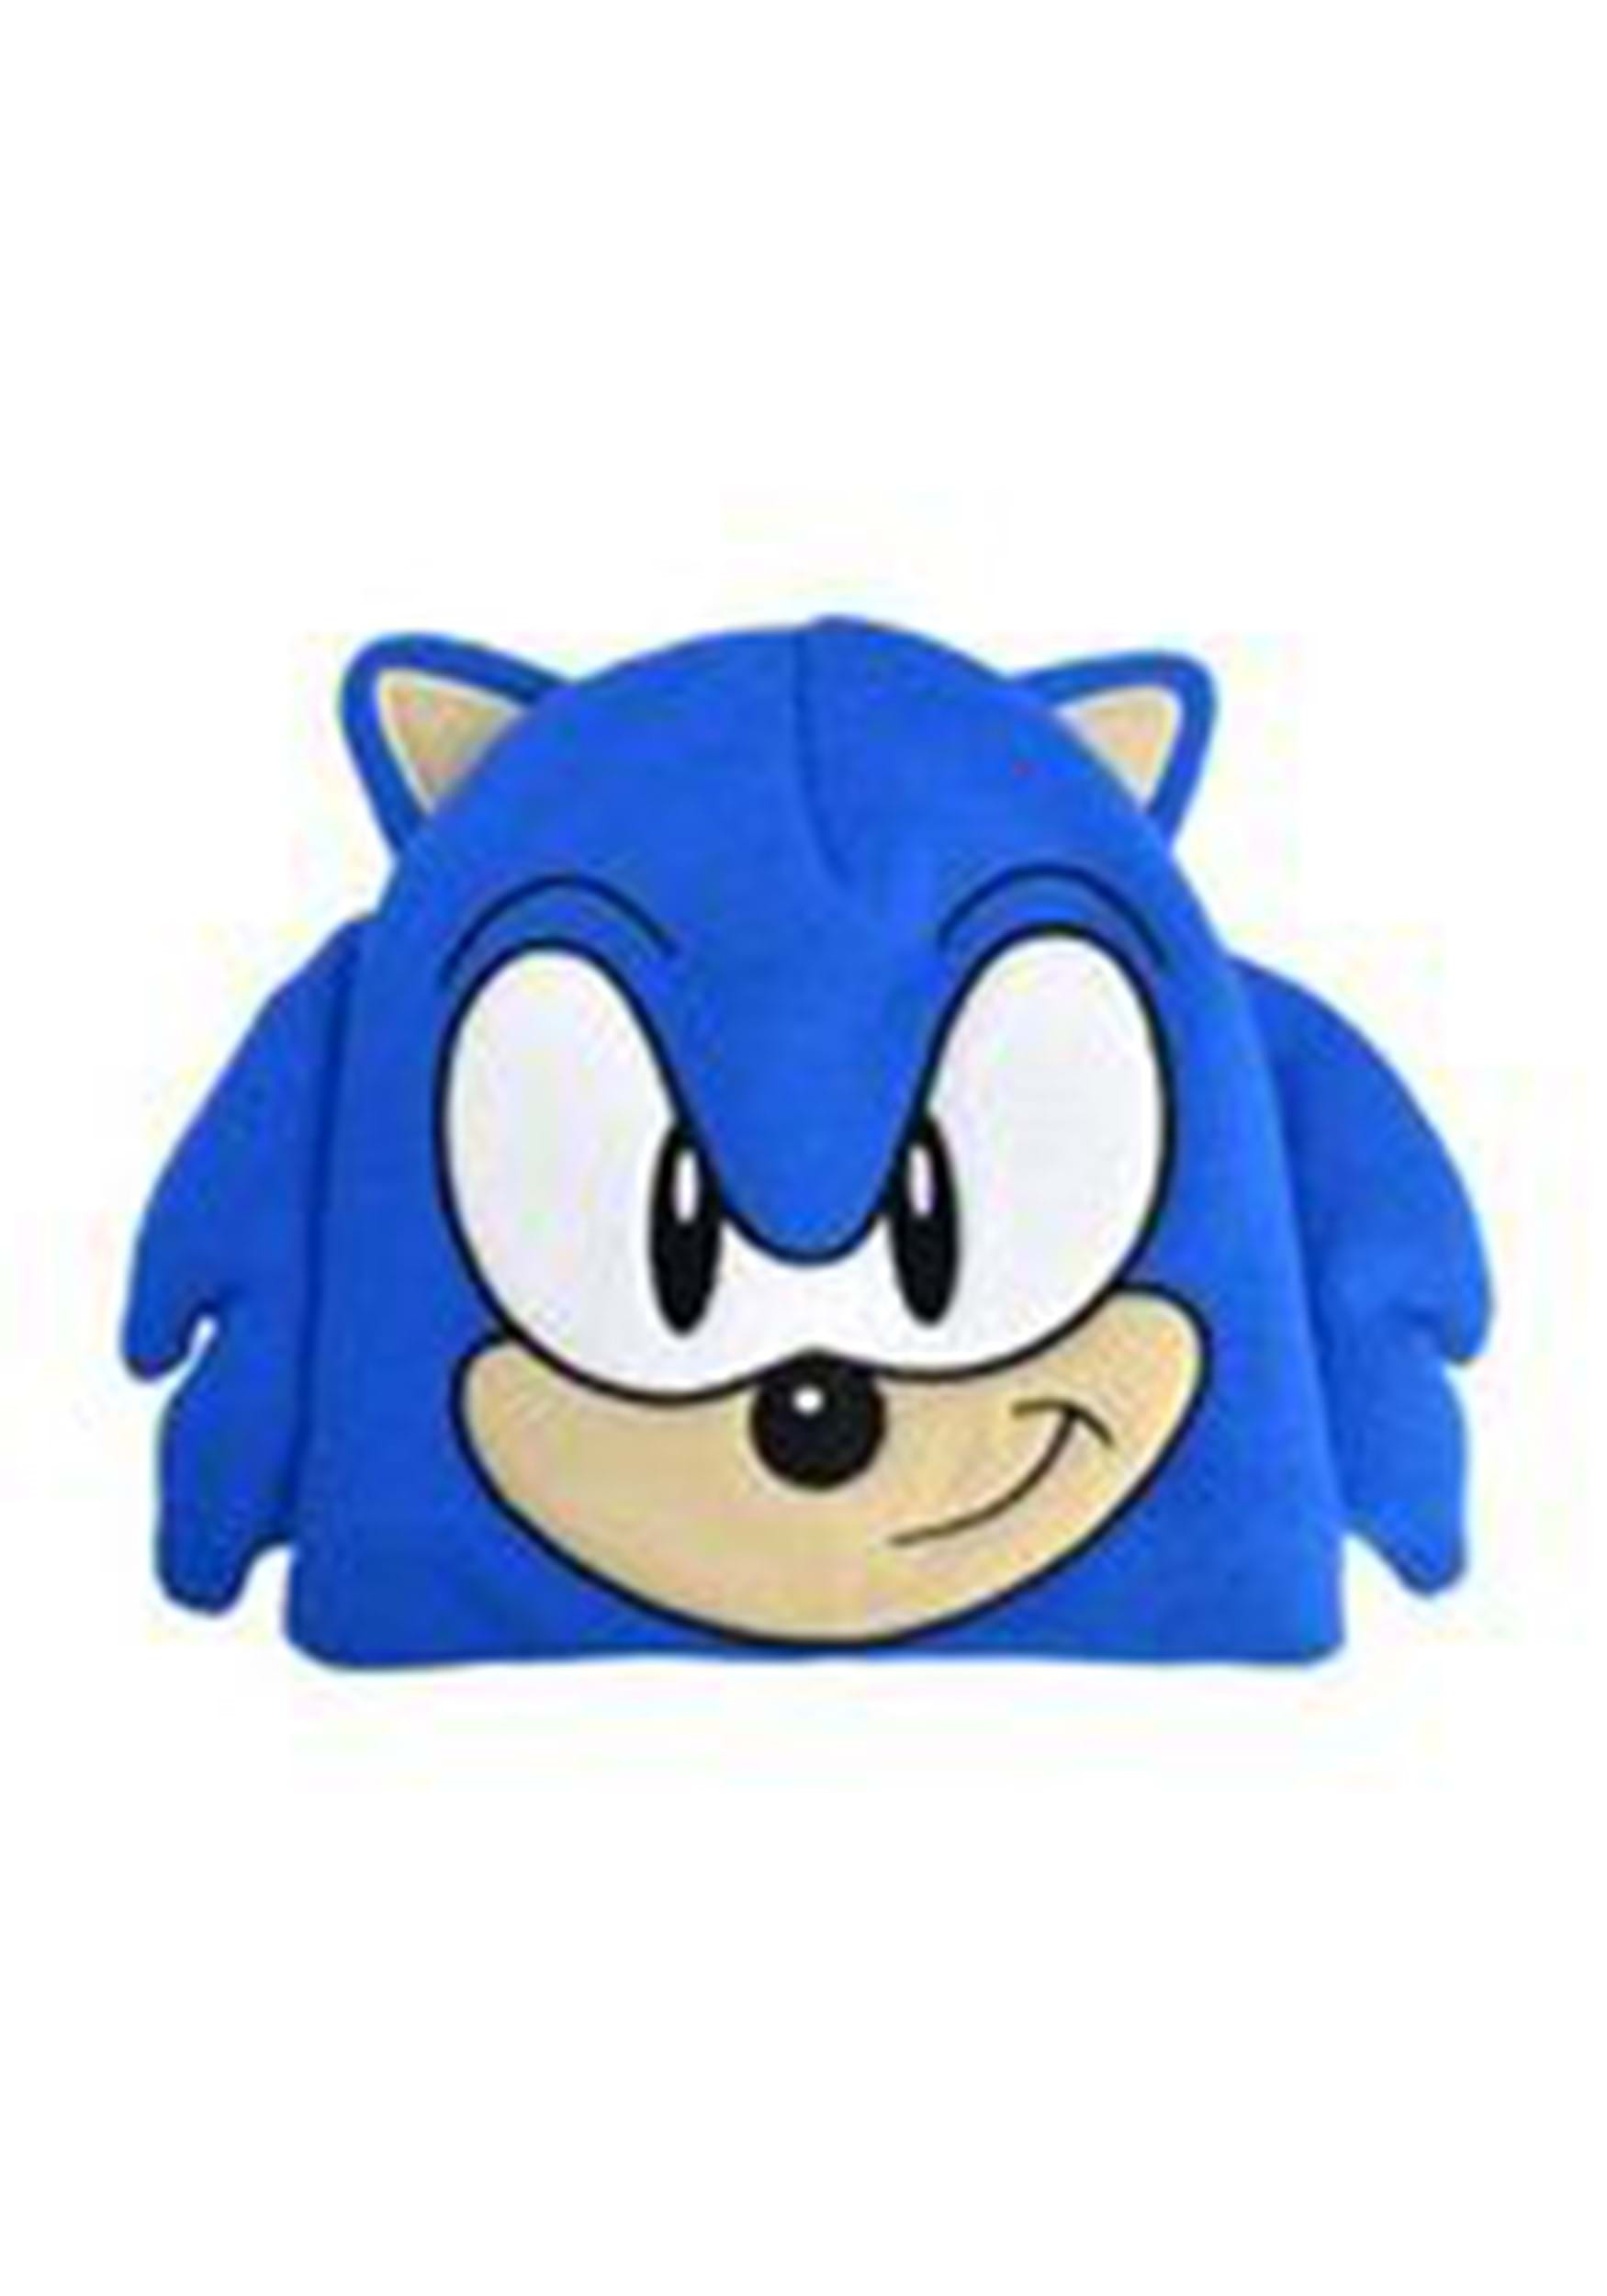 3D Knit Sonic Beanie